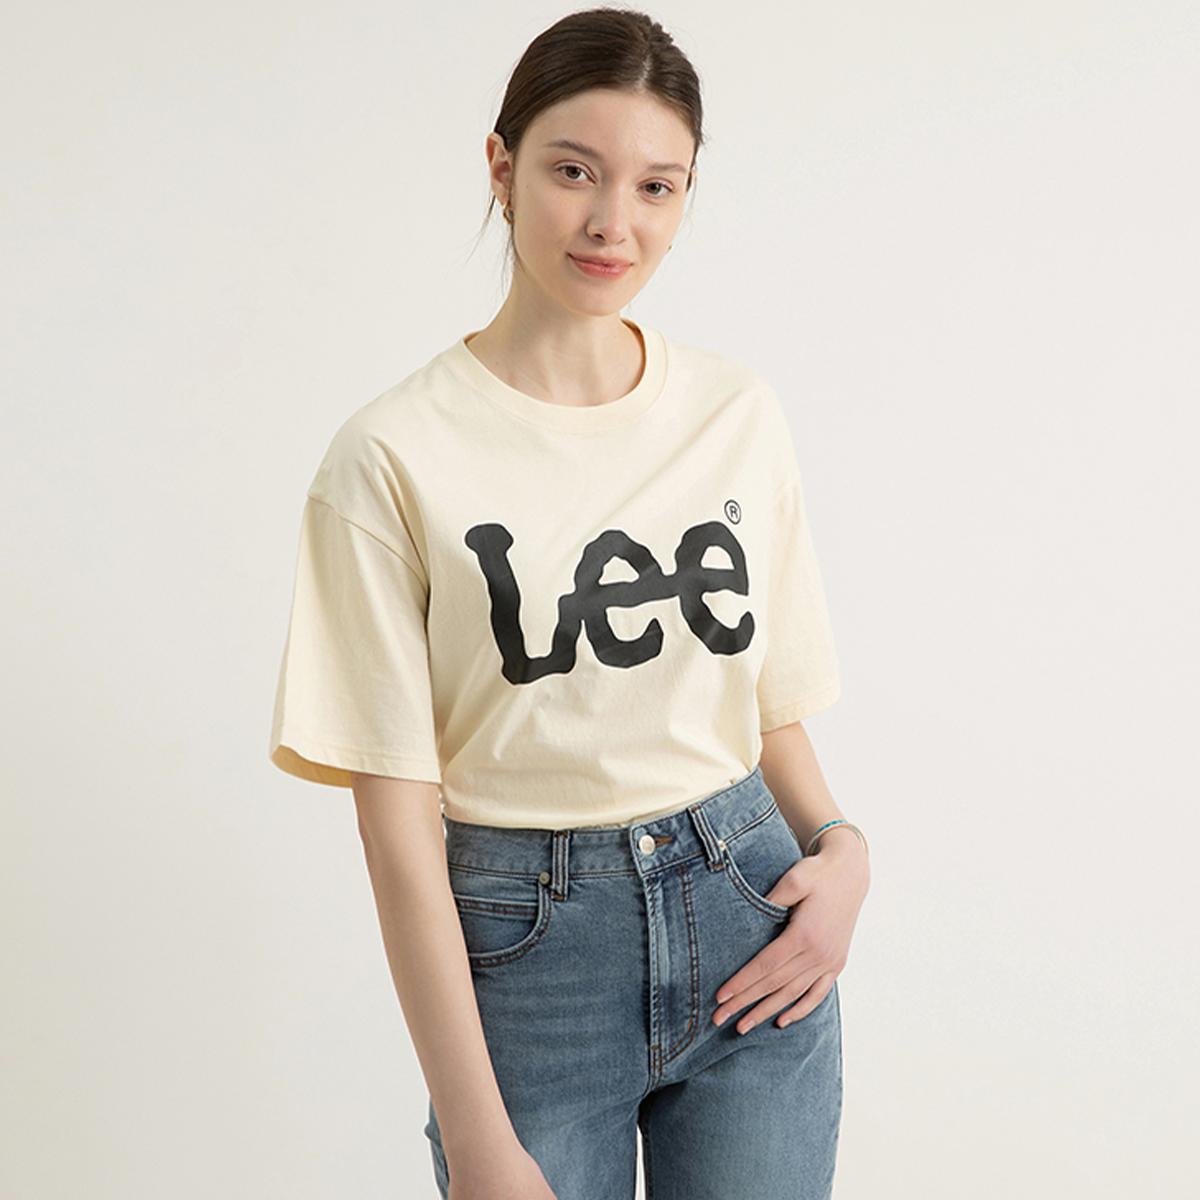 Áo T-shirt logo LEE (Màu trắng ngà)